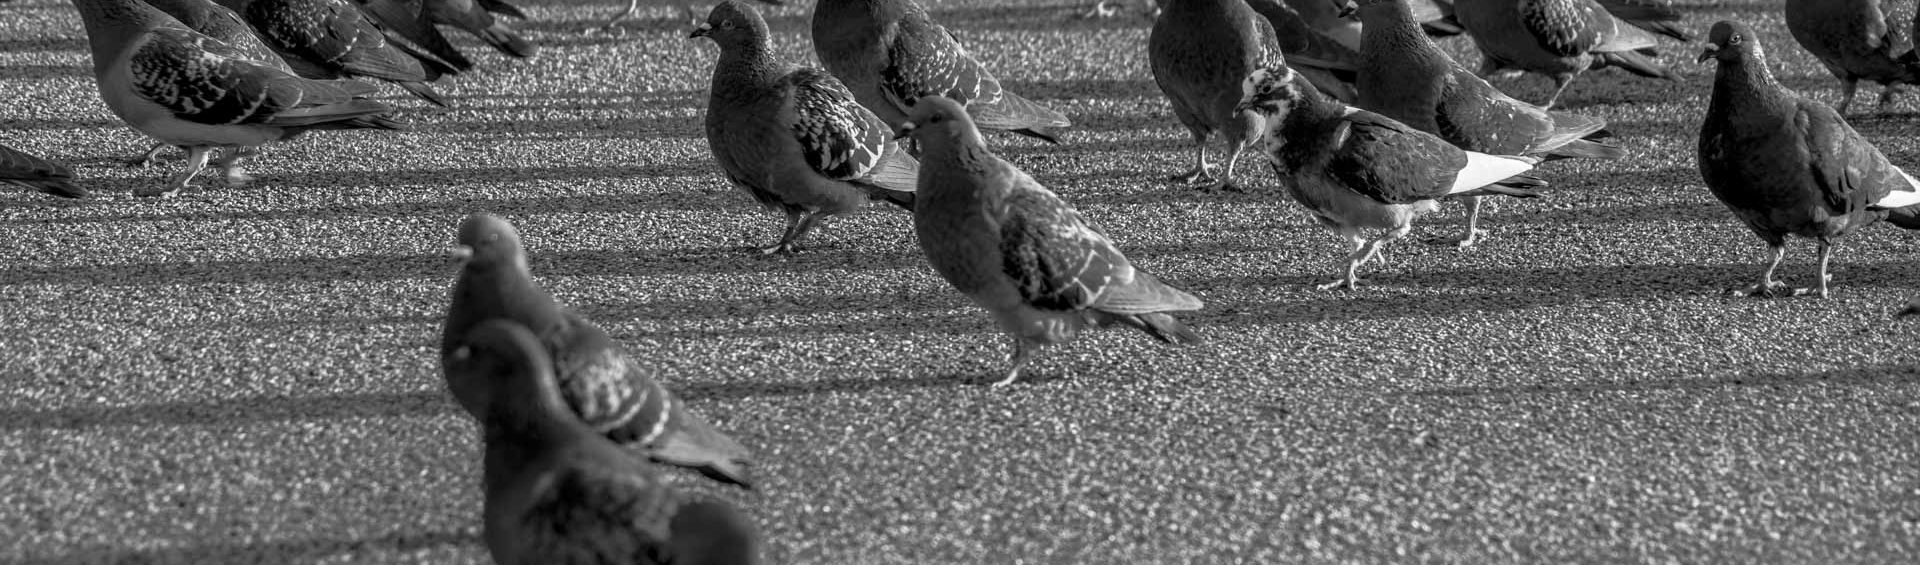 buy homing pigeon, found homing pigeon, home of pigeon league, home pigeon, homing pigeon, homing pigeon colors, homing pigeon facts, homing pigeon identification, homing pigeon races, homing pigeon racing, homing pigeon sale, homing pigeon society, homing pigeons, homing pigeons for sale, homing racing pigeons, pigeon home, racing homing pigeons, white homing pigeons